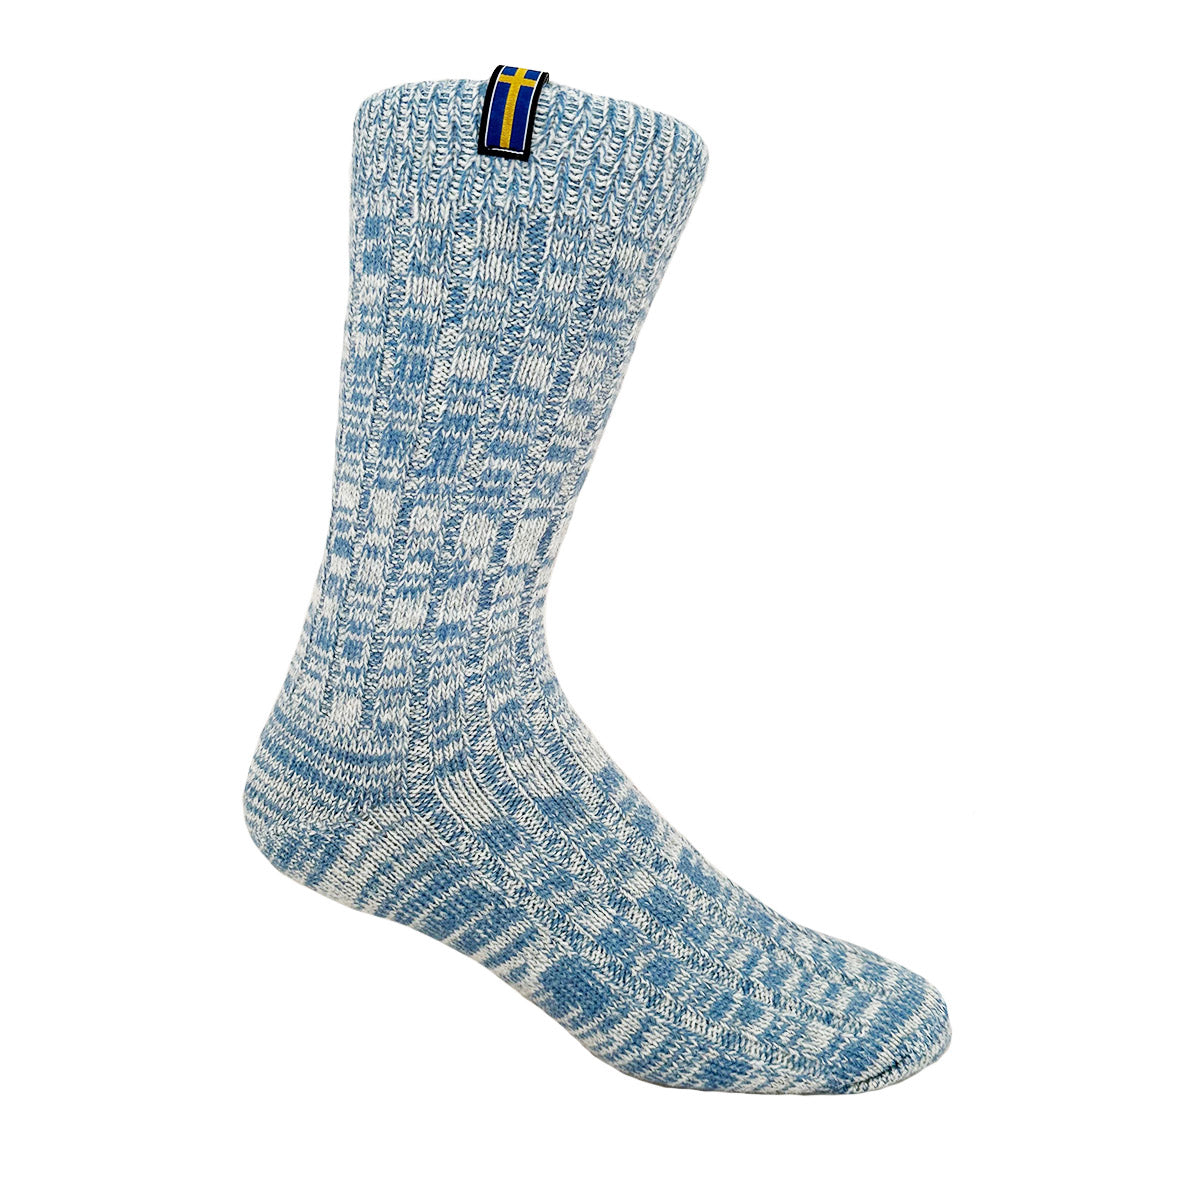 Sweden Womens Wool Socks 2-Pack Gift Box, Light Blue-Navy Blue (8326270419231)